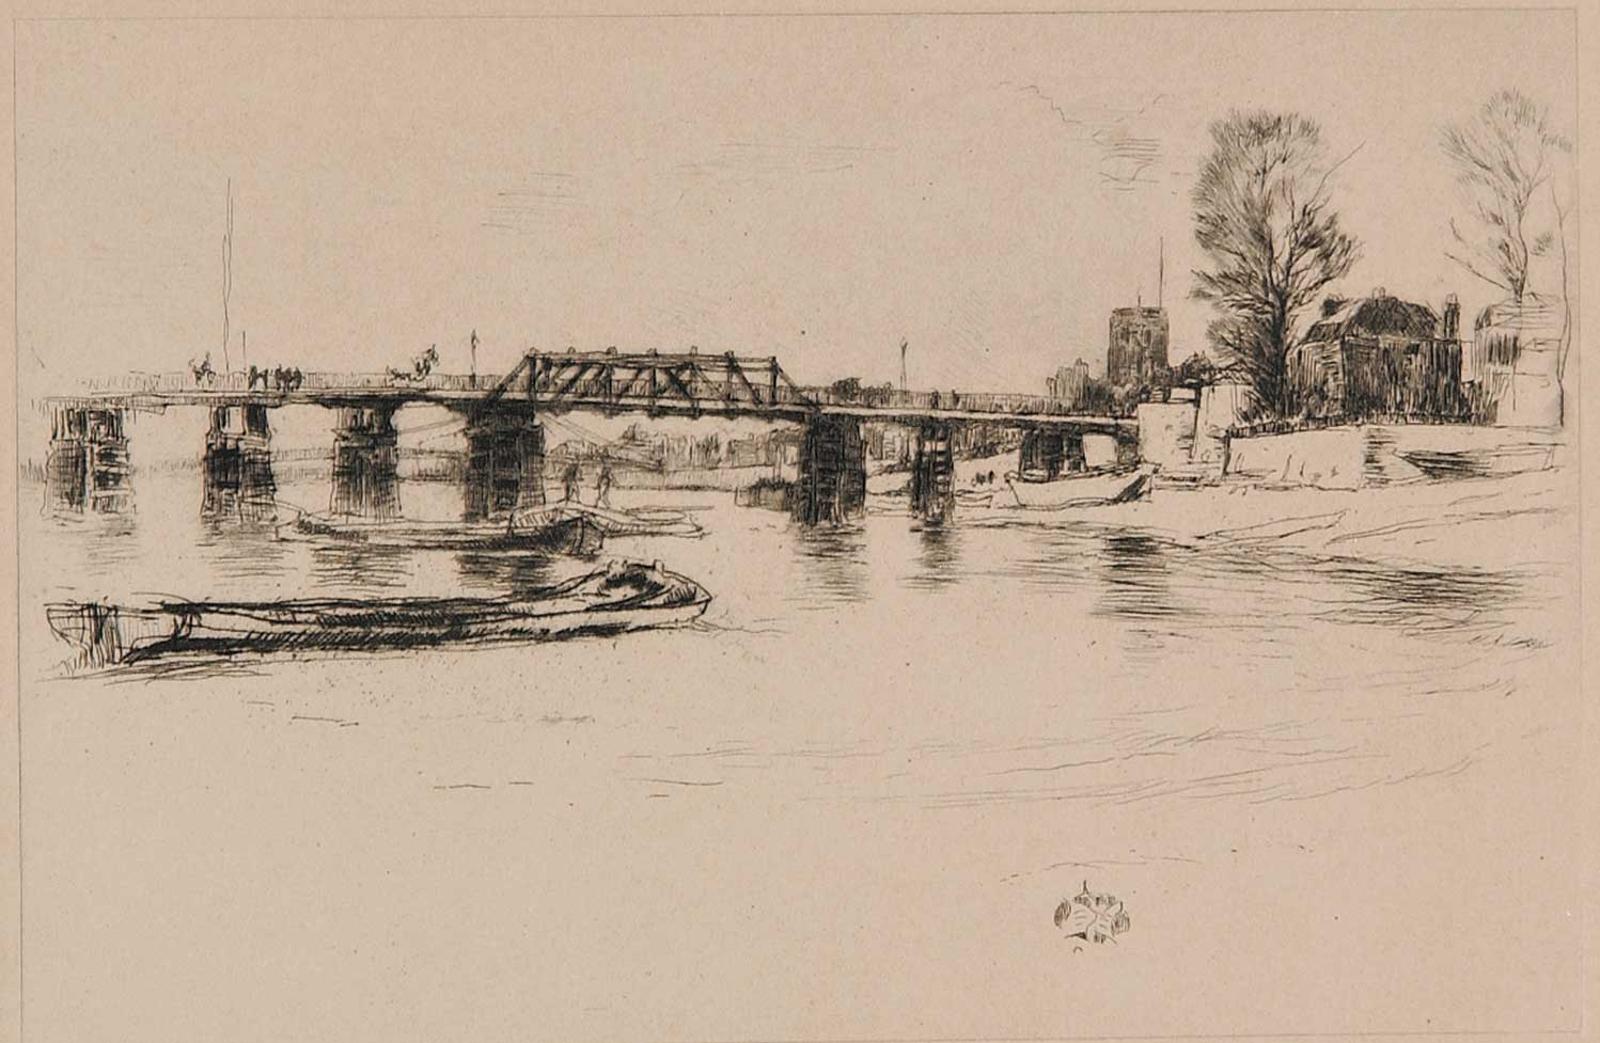 James Abbott McNeill Whistler (1834-1903) - Chelsea